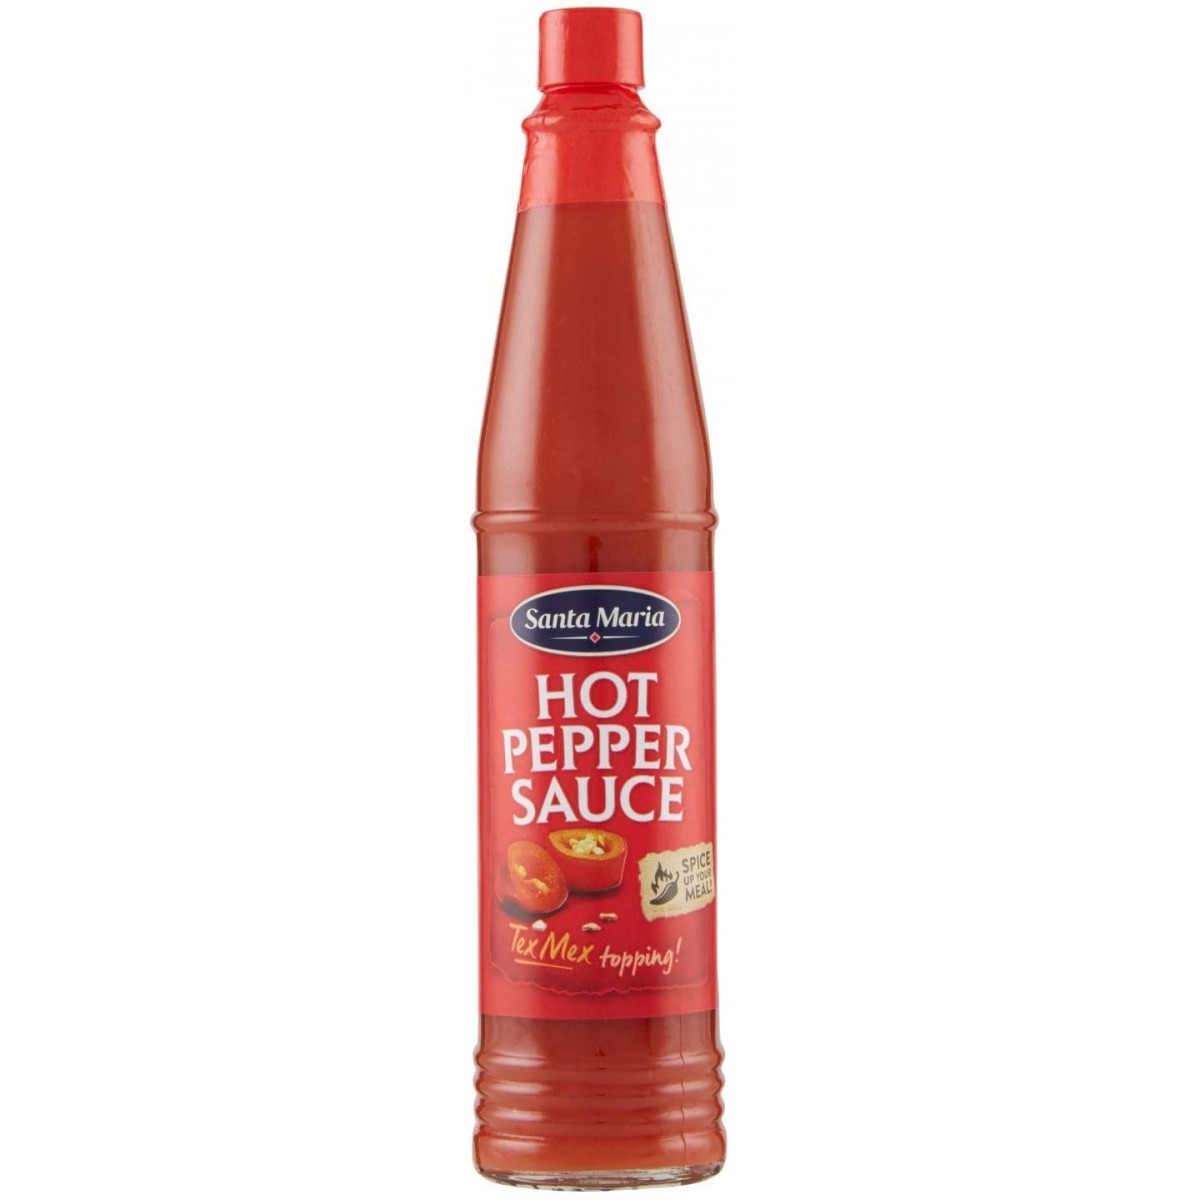 Pepper sauce. Соус Santa Maria hot Pepper Sauce. Соус Santa Maria hot Pepper, 85 мл. Santa Maria кетчуп.